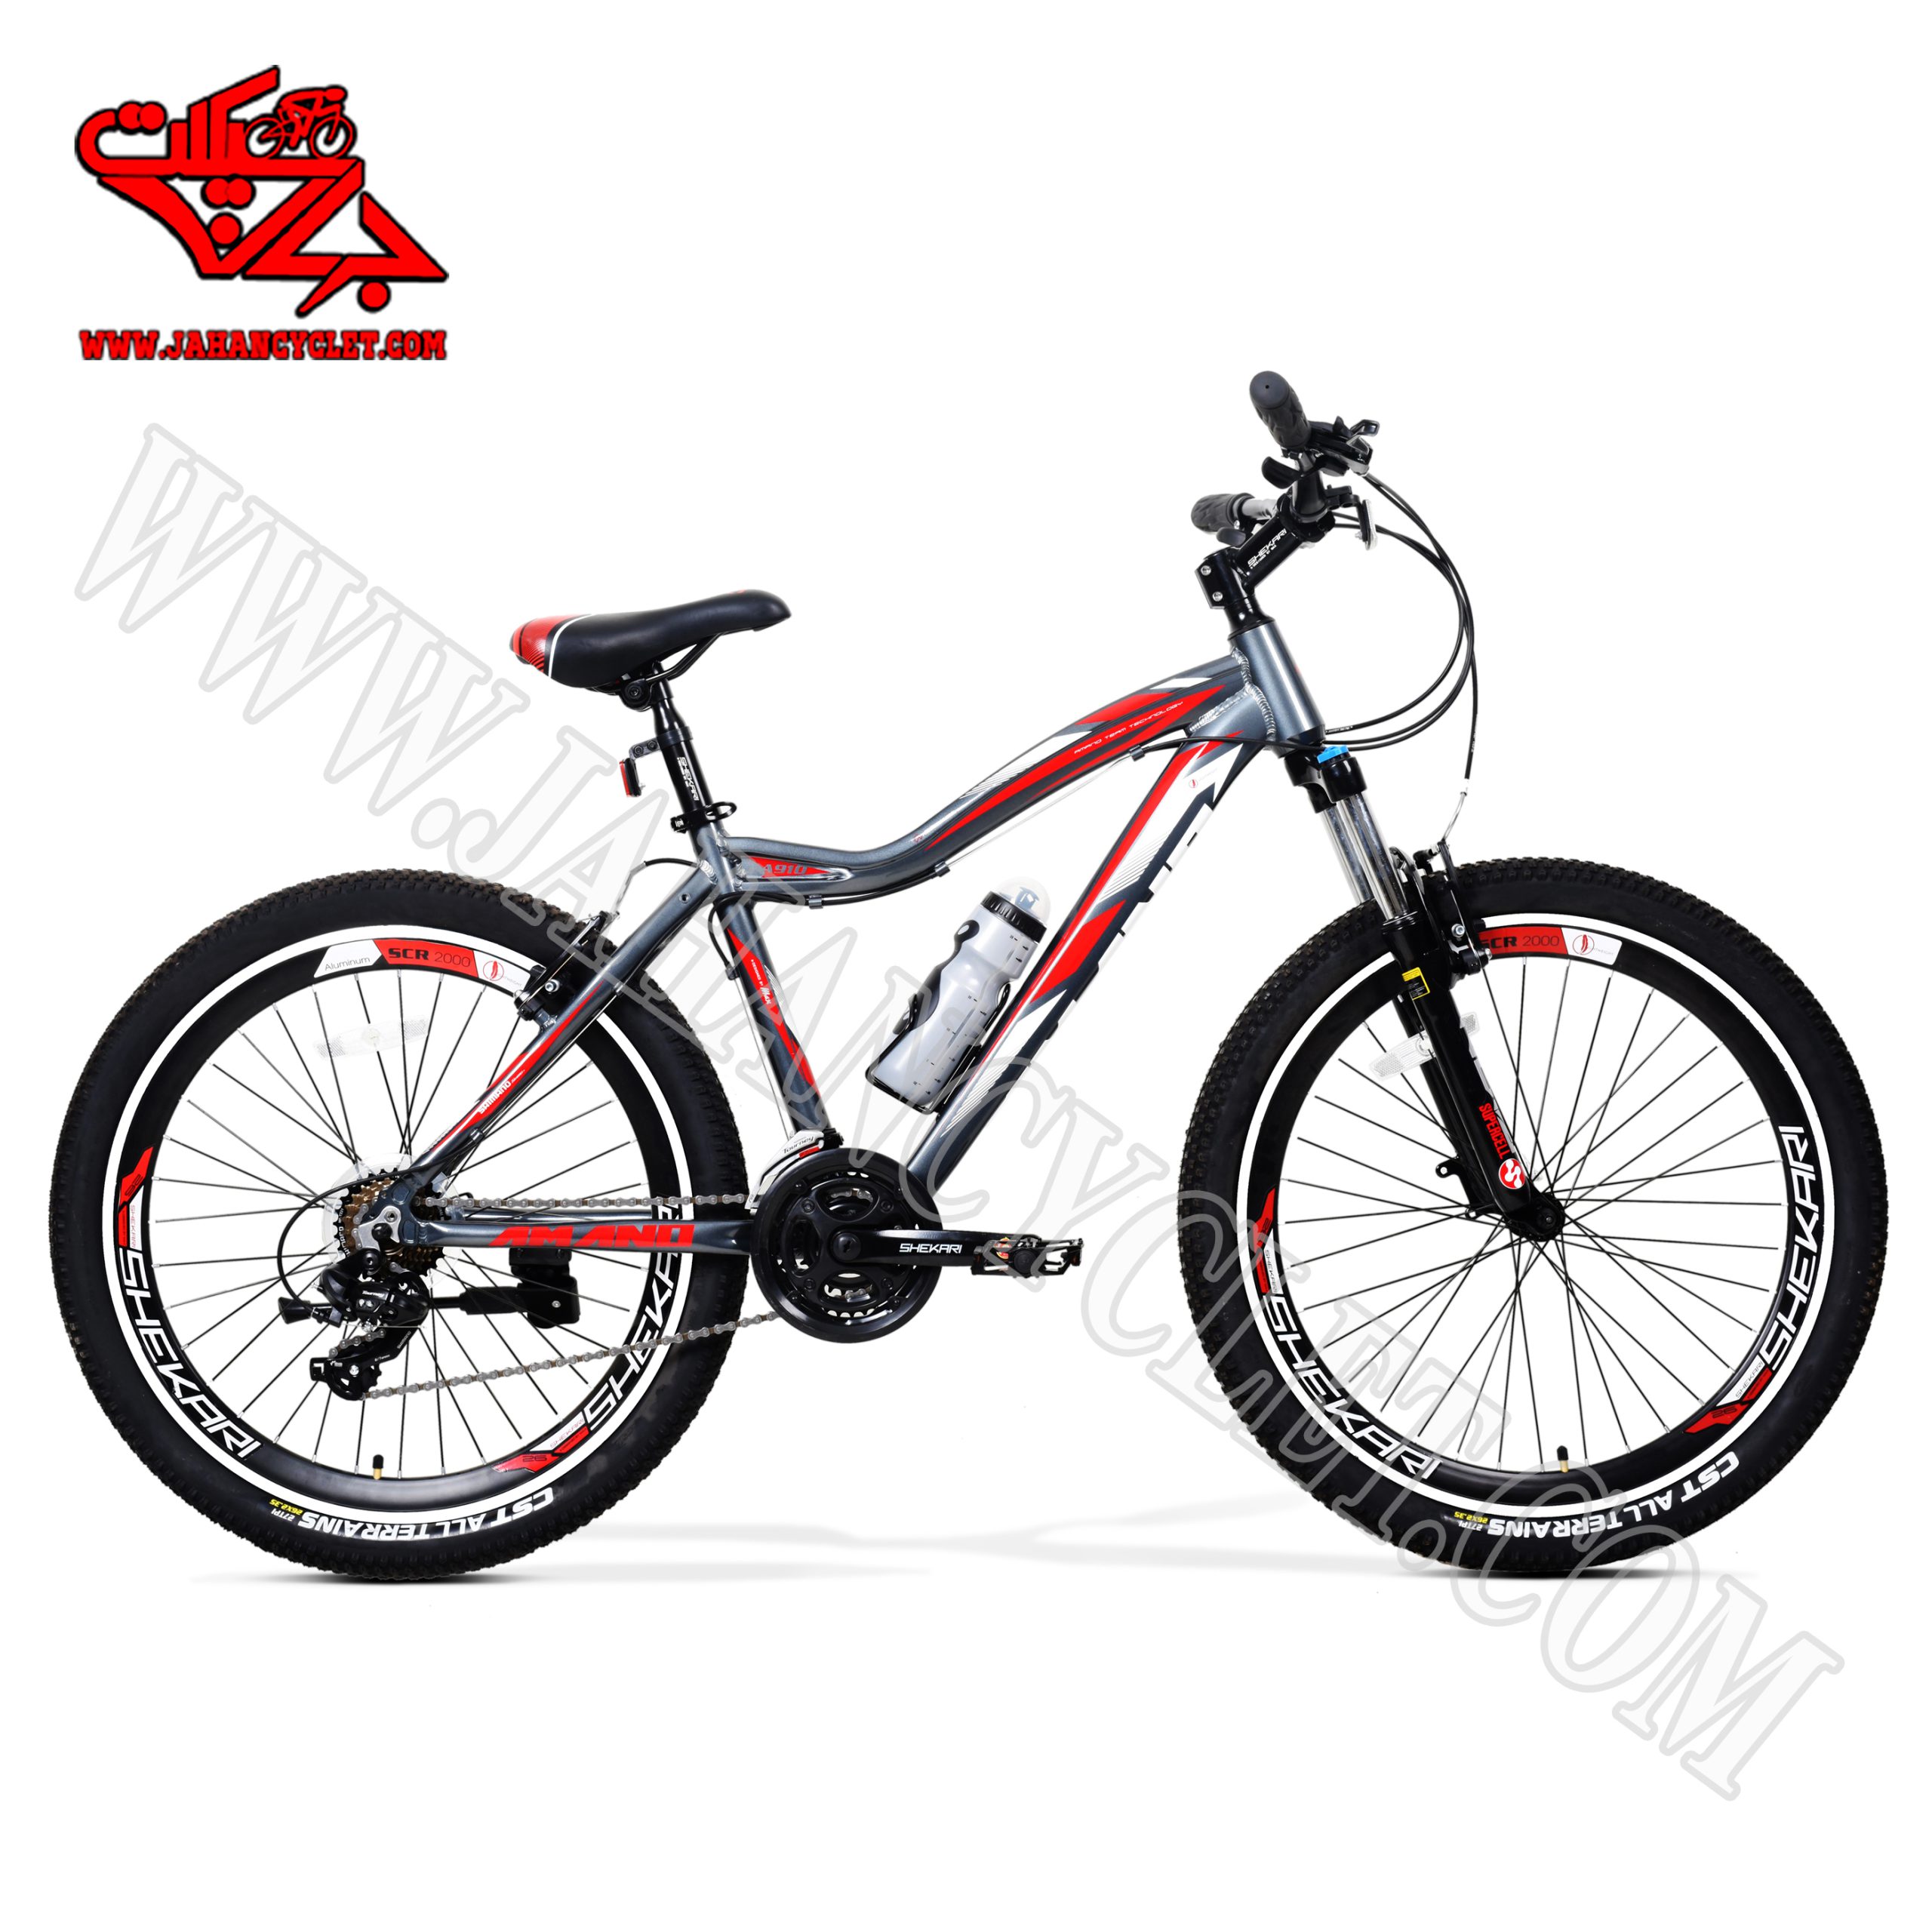 دوچرخه آمانو طوسی قرمز 26